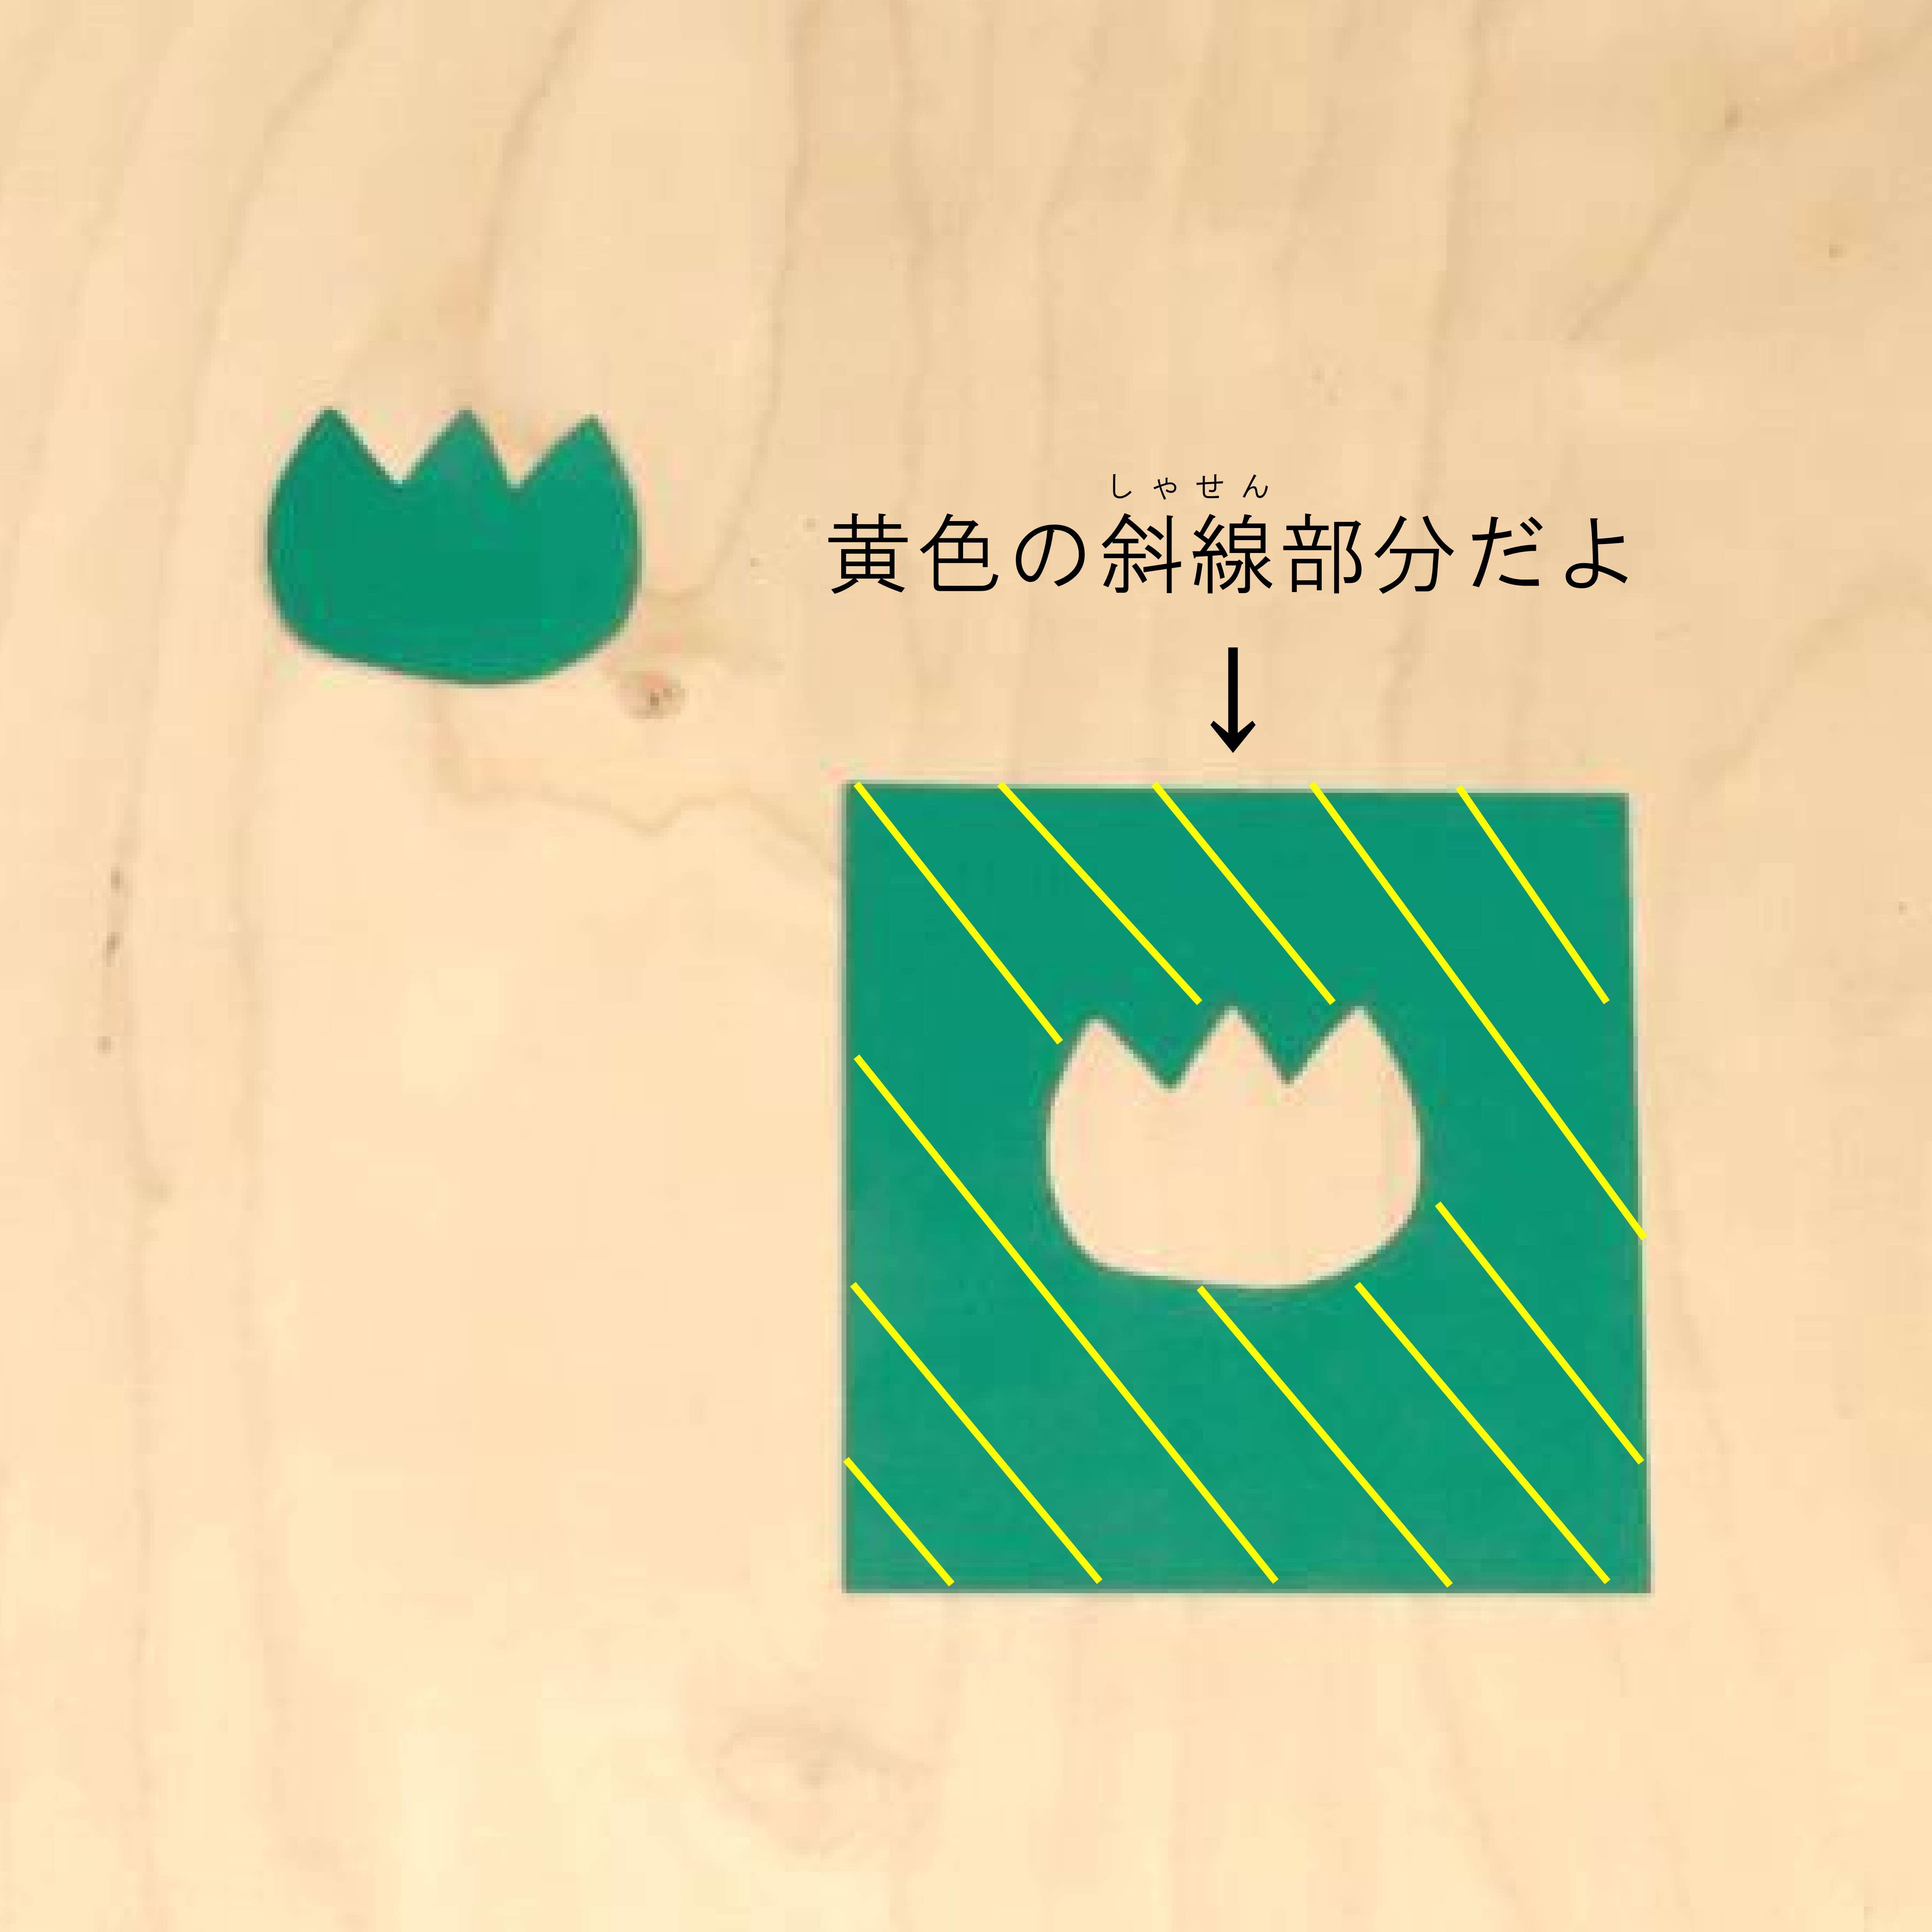 おうちでできるtetteスクール オリジナルメッセージカードで気持ちを伝えよう Tette テッテ 須賀川市民交流センター